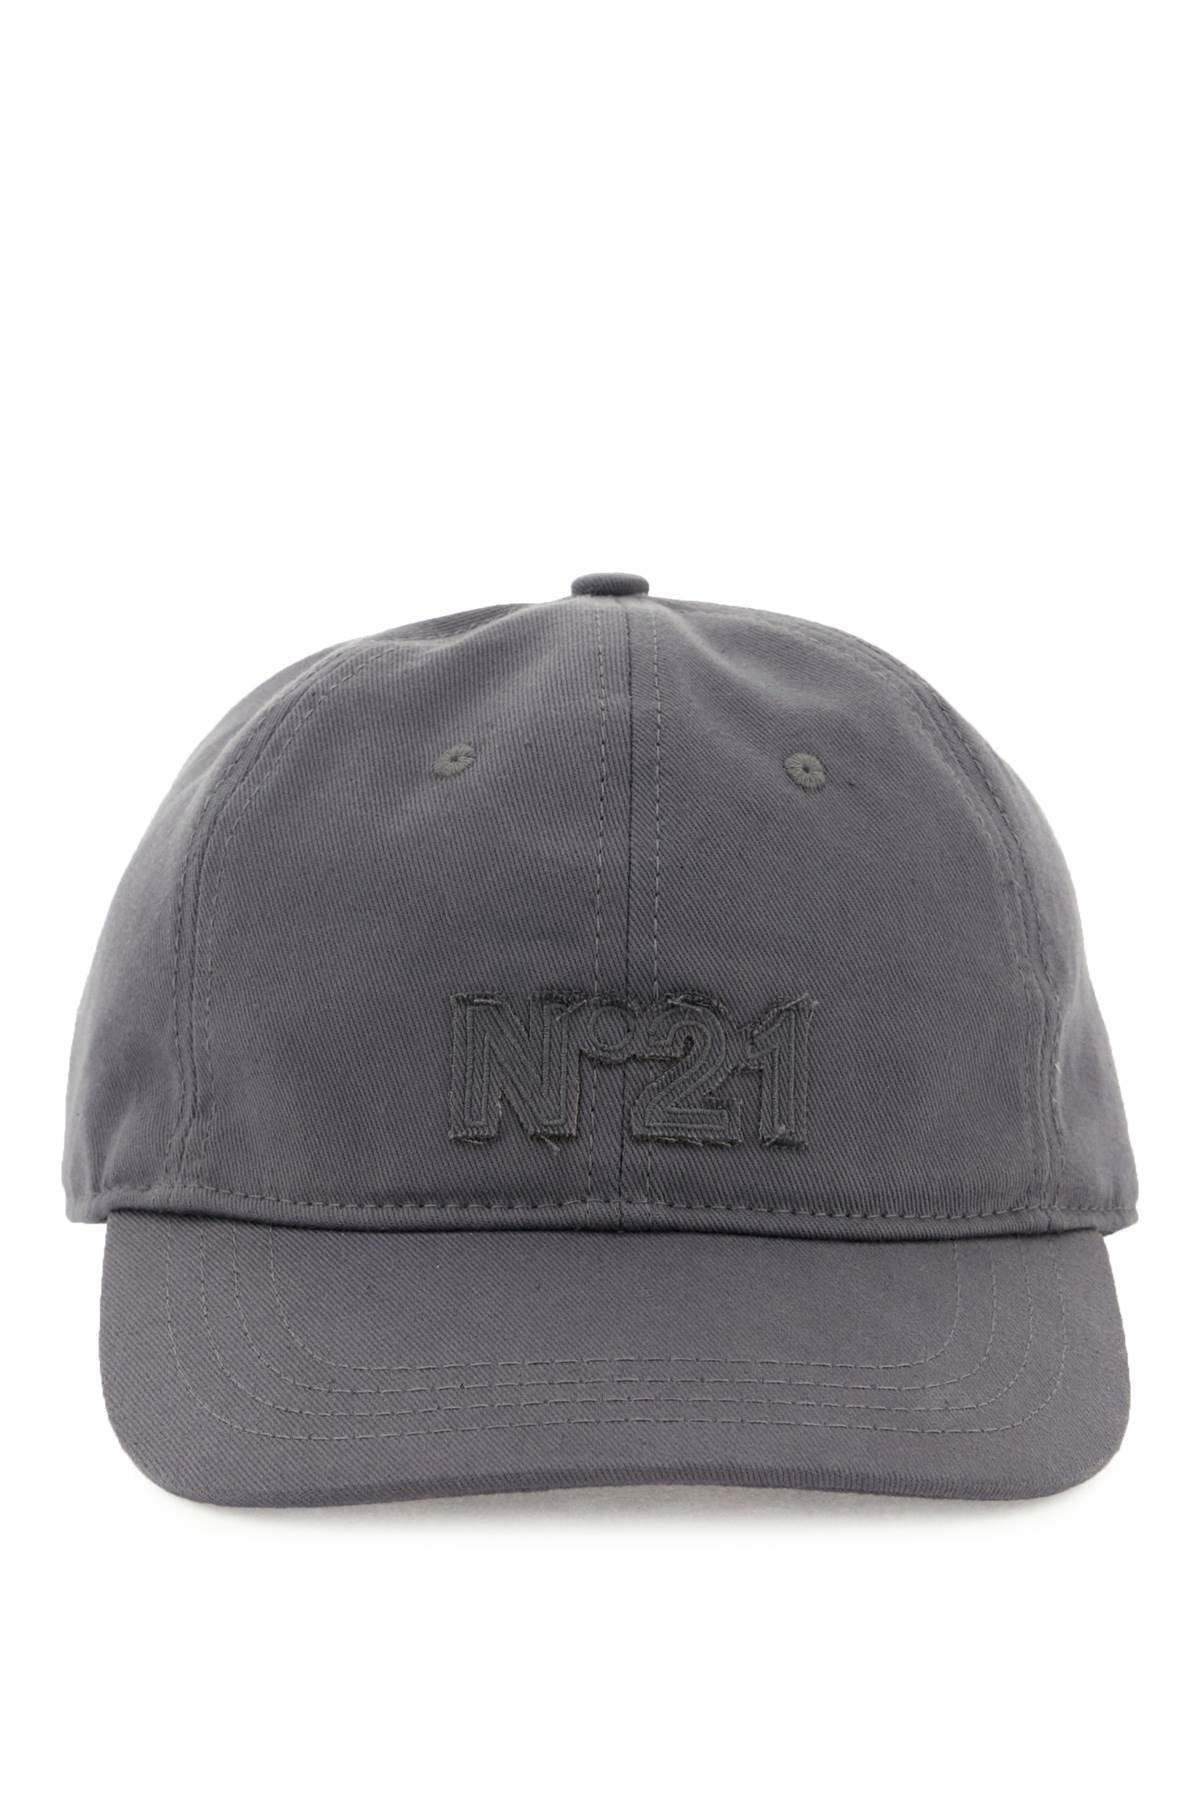 N.21 N.21 baseball cap with logo